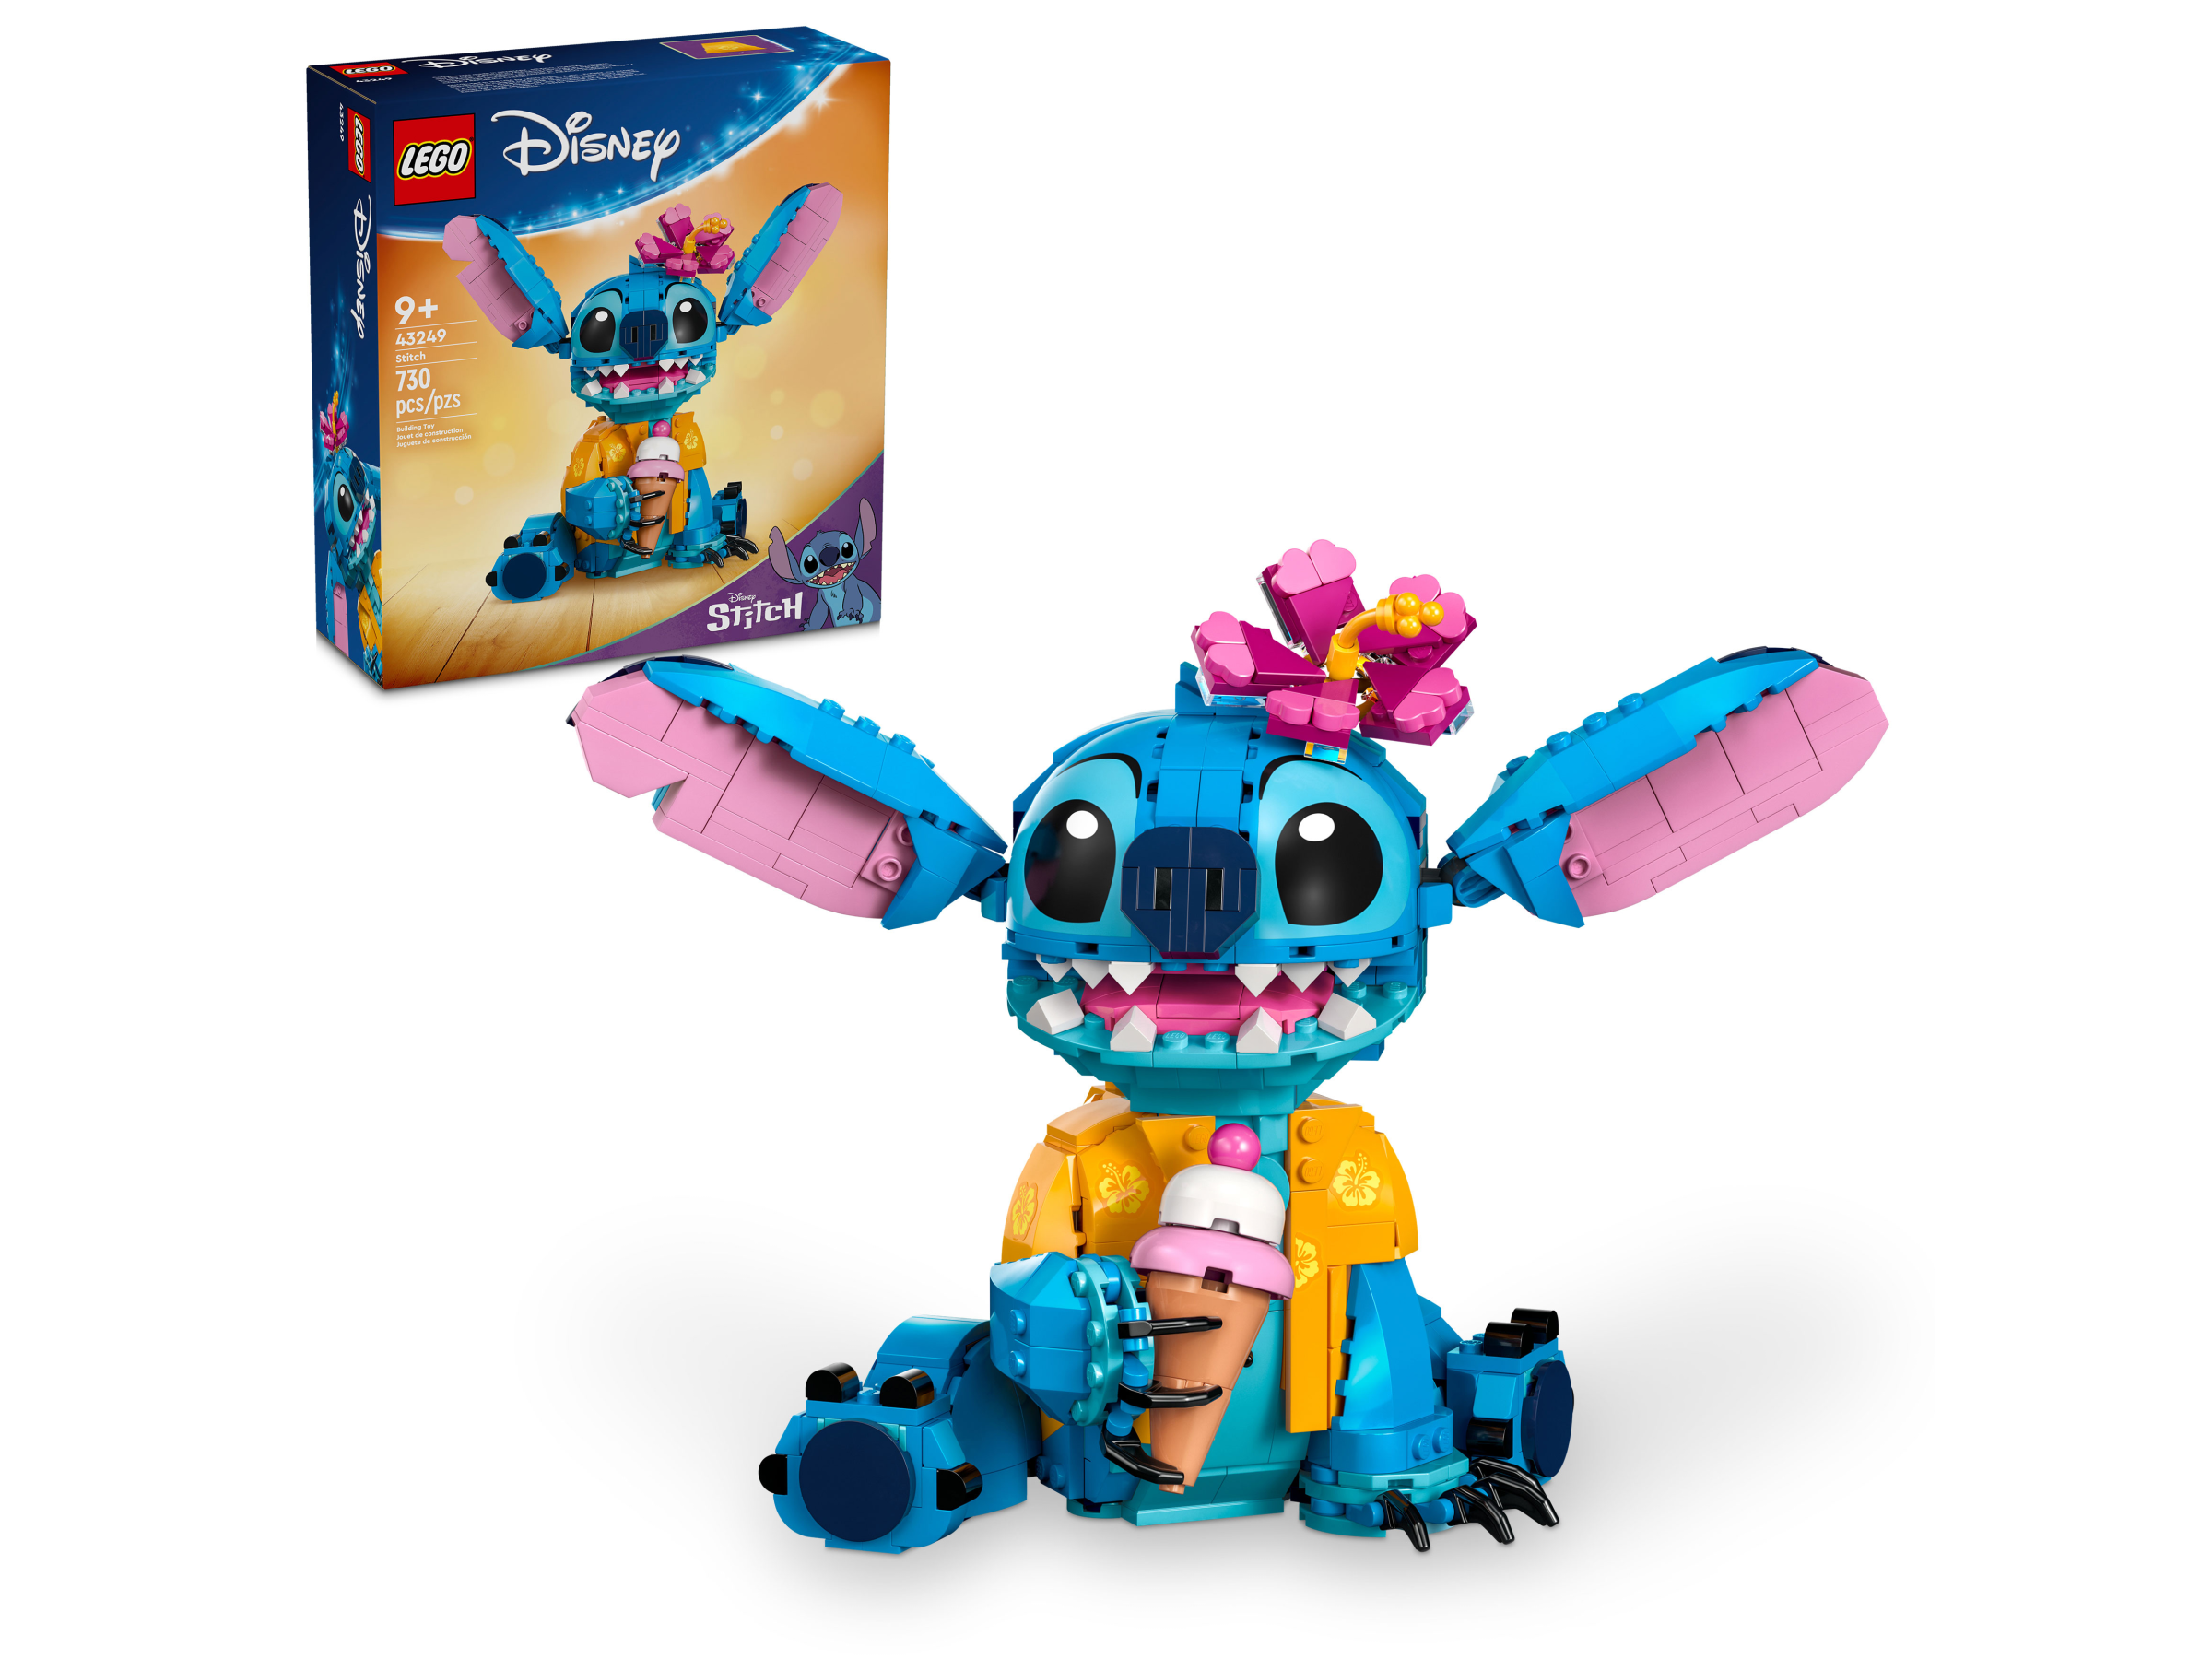 LEAKED! LEGO Disney Buildable Stitch LEGO Set! #lego #legoleak #legodi, lego  stitch